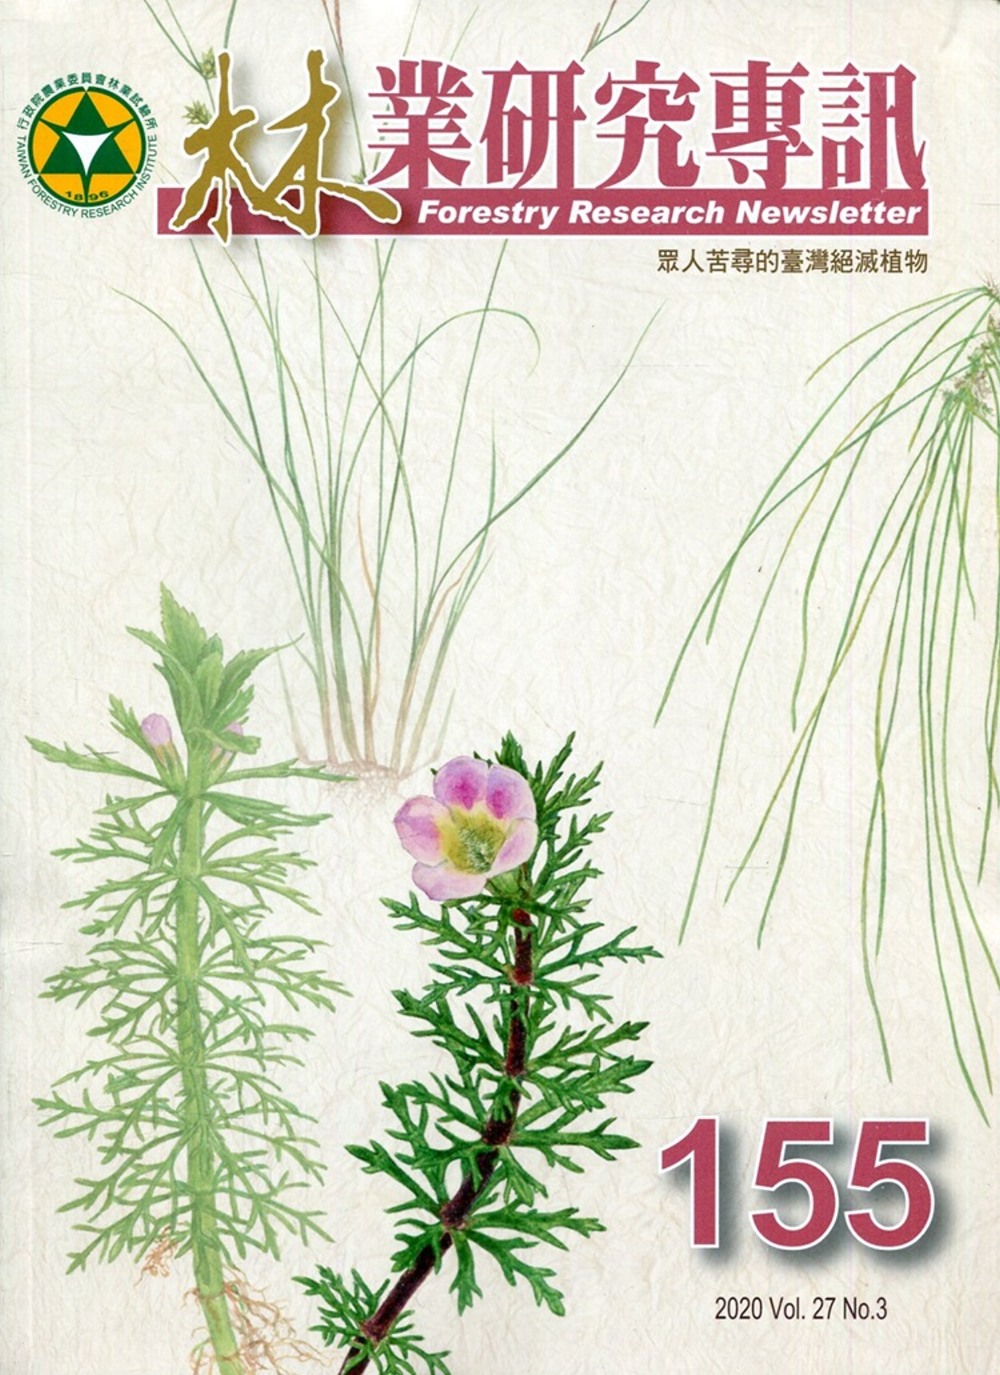 林業研究專訊-155 眾人苦尋的臺灣絕滅植物